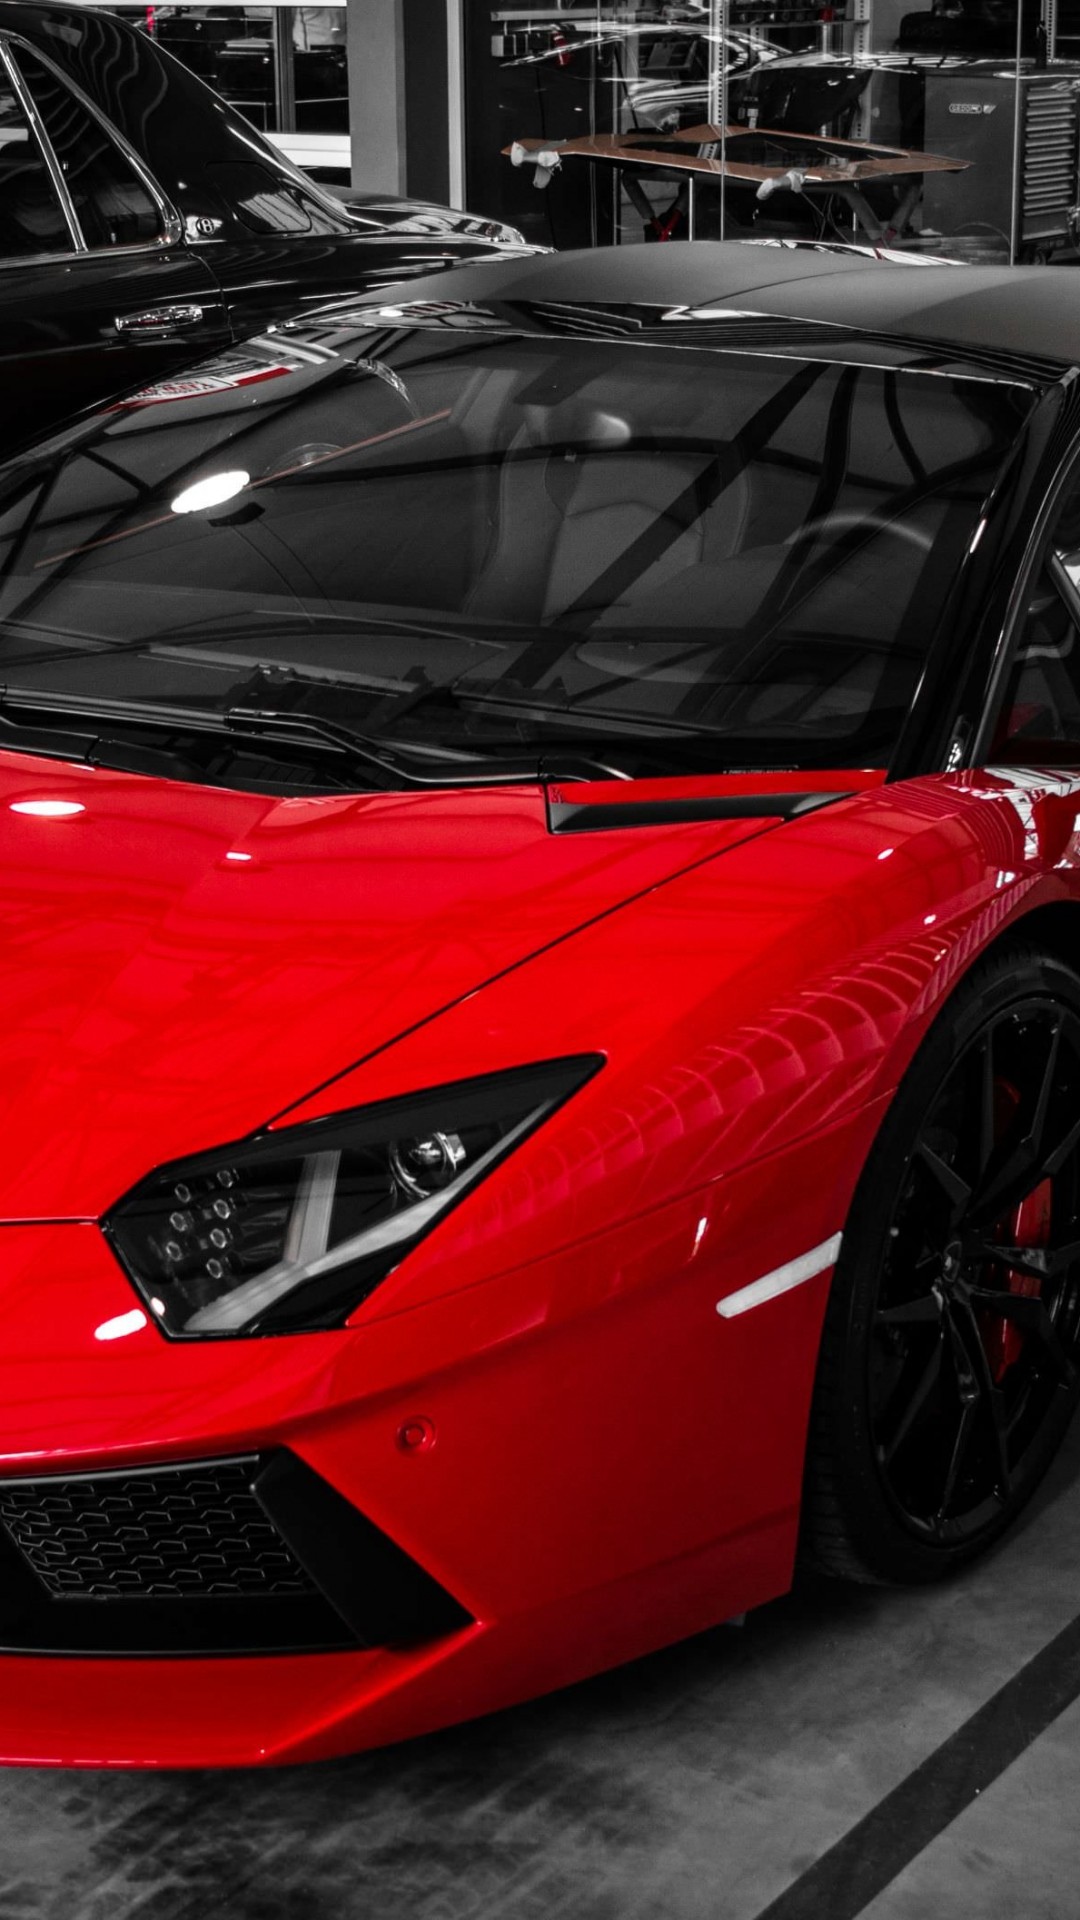 Red Lamborghini Aventador Wallpaper for SAMSUNG Galaxy S4